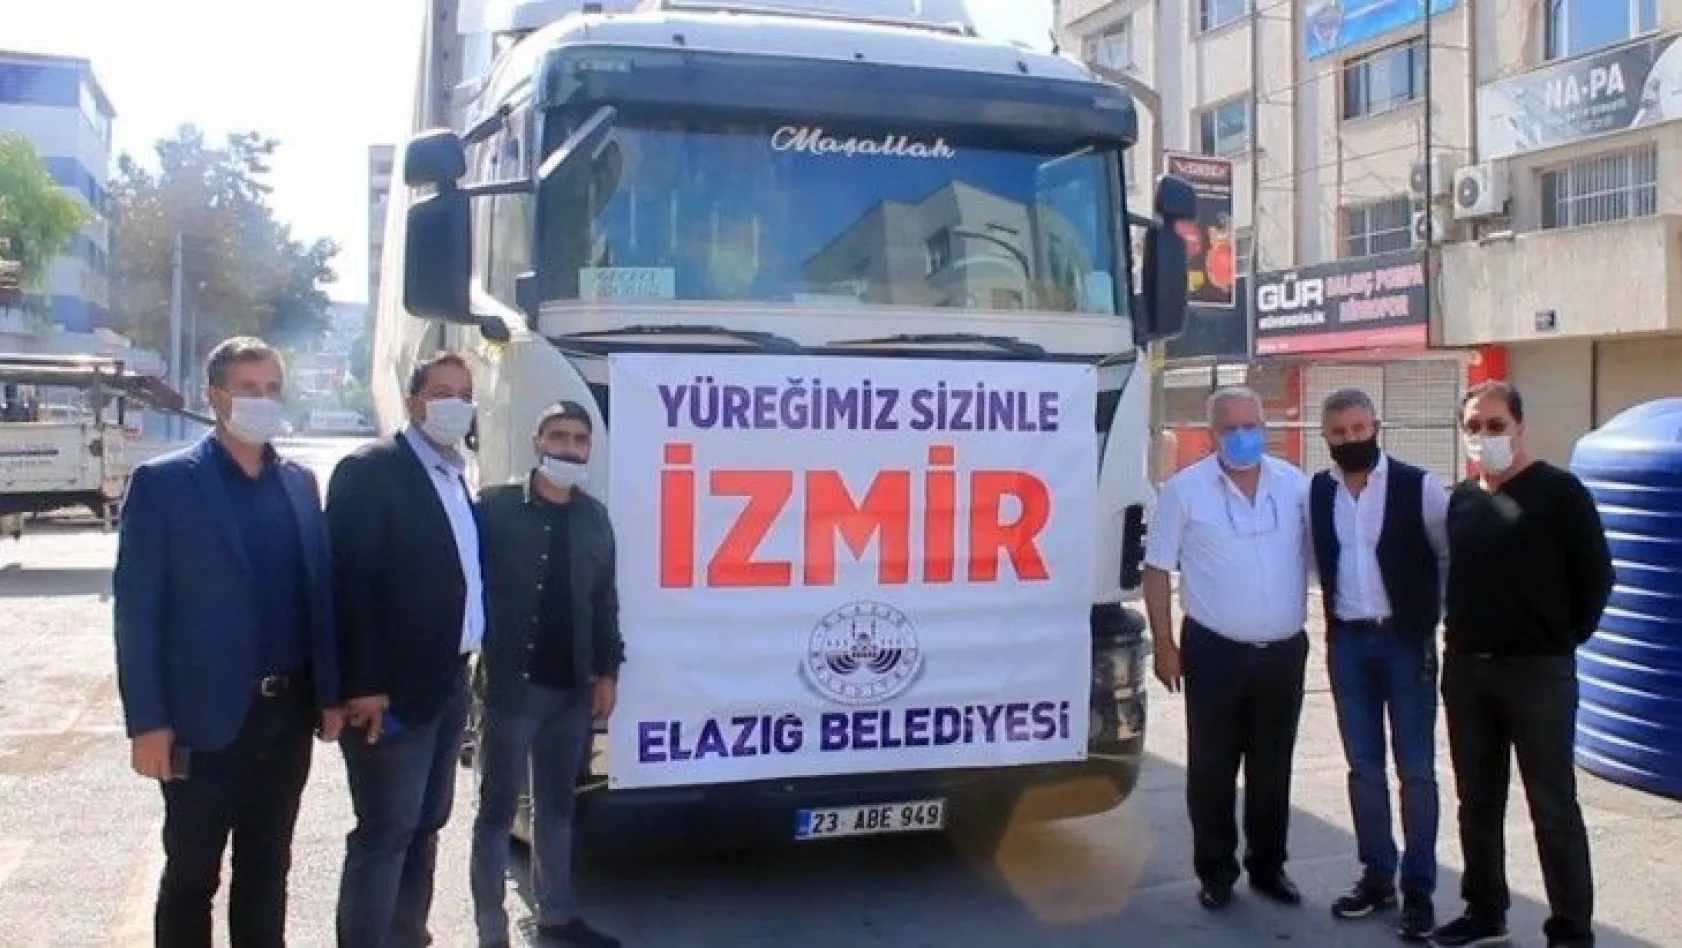 Elazığ Belediyesi'nden İzmir'e destek